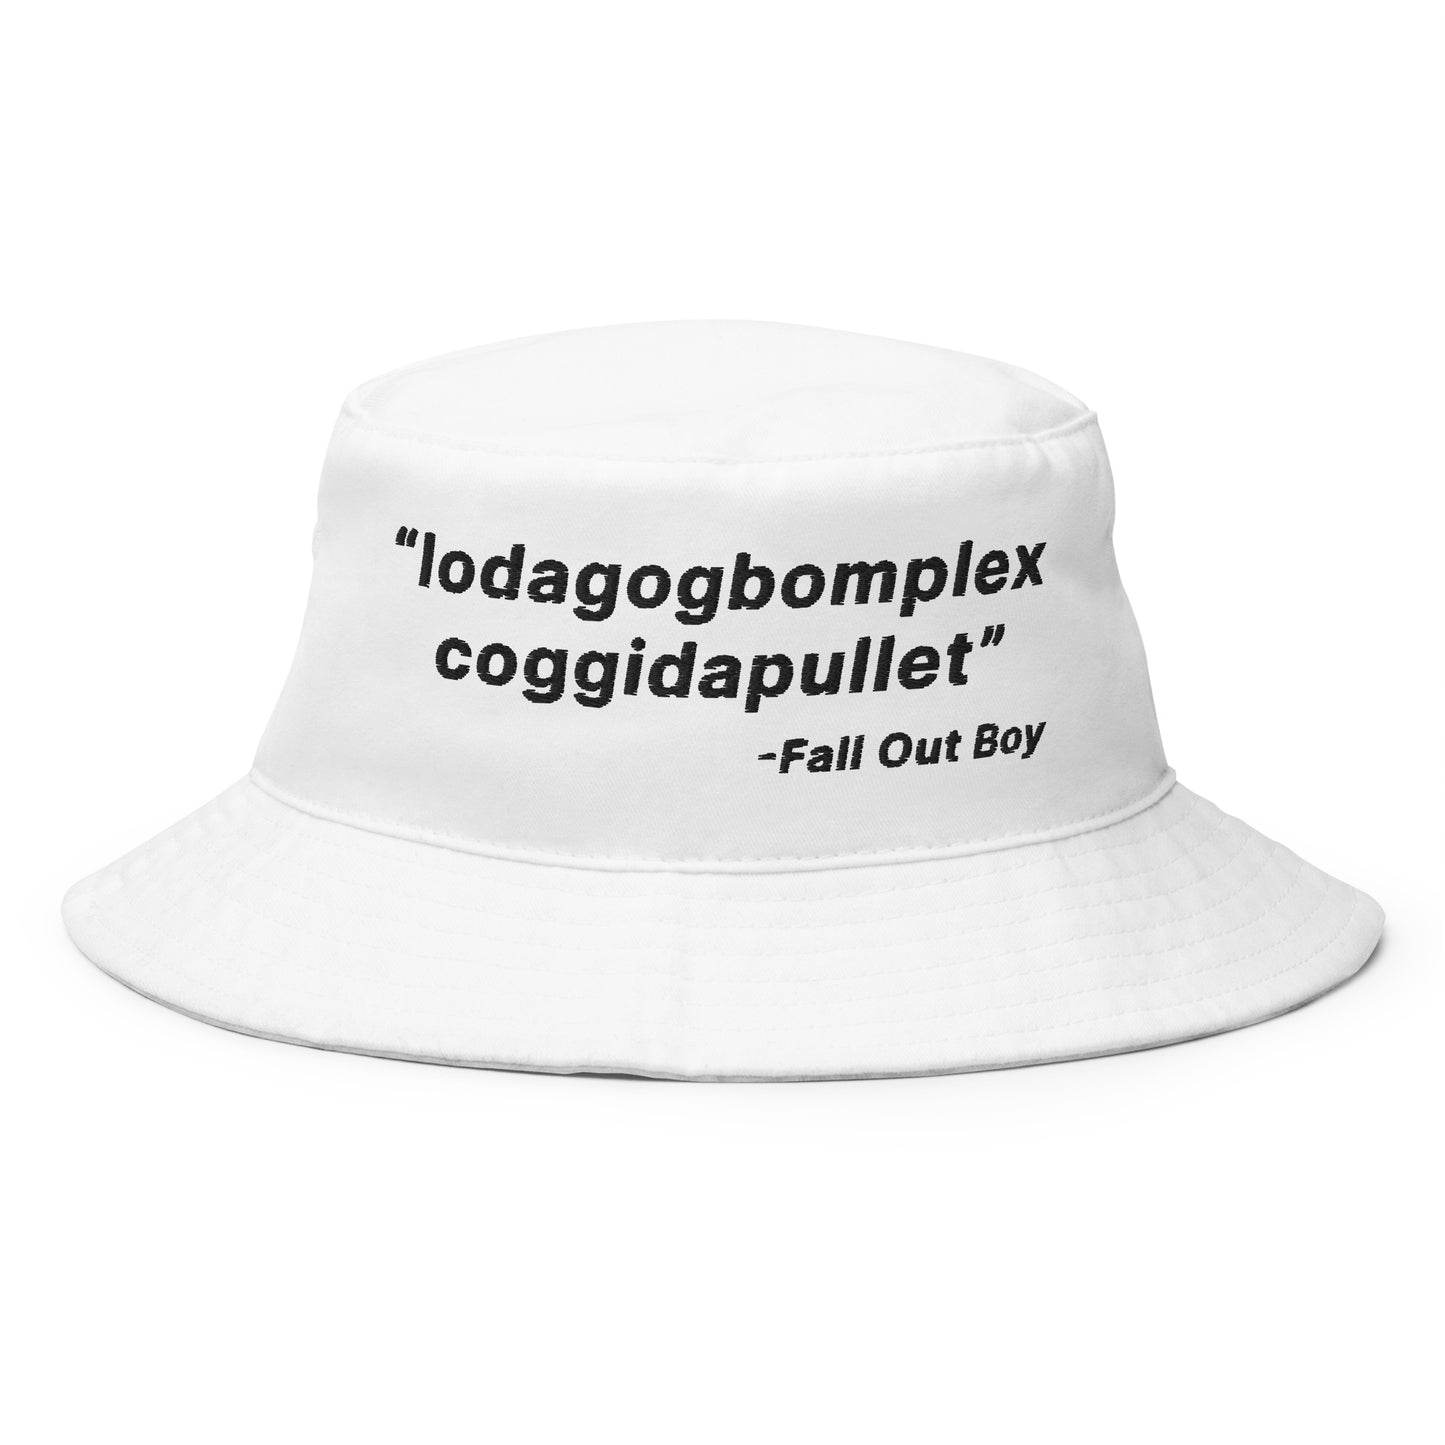 Lodagogbomplex Coggidapullet (Fall Out Boy) Bucket Hat